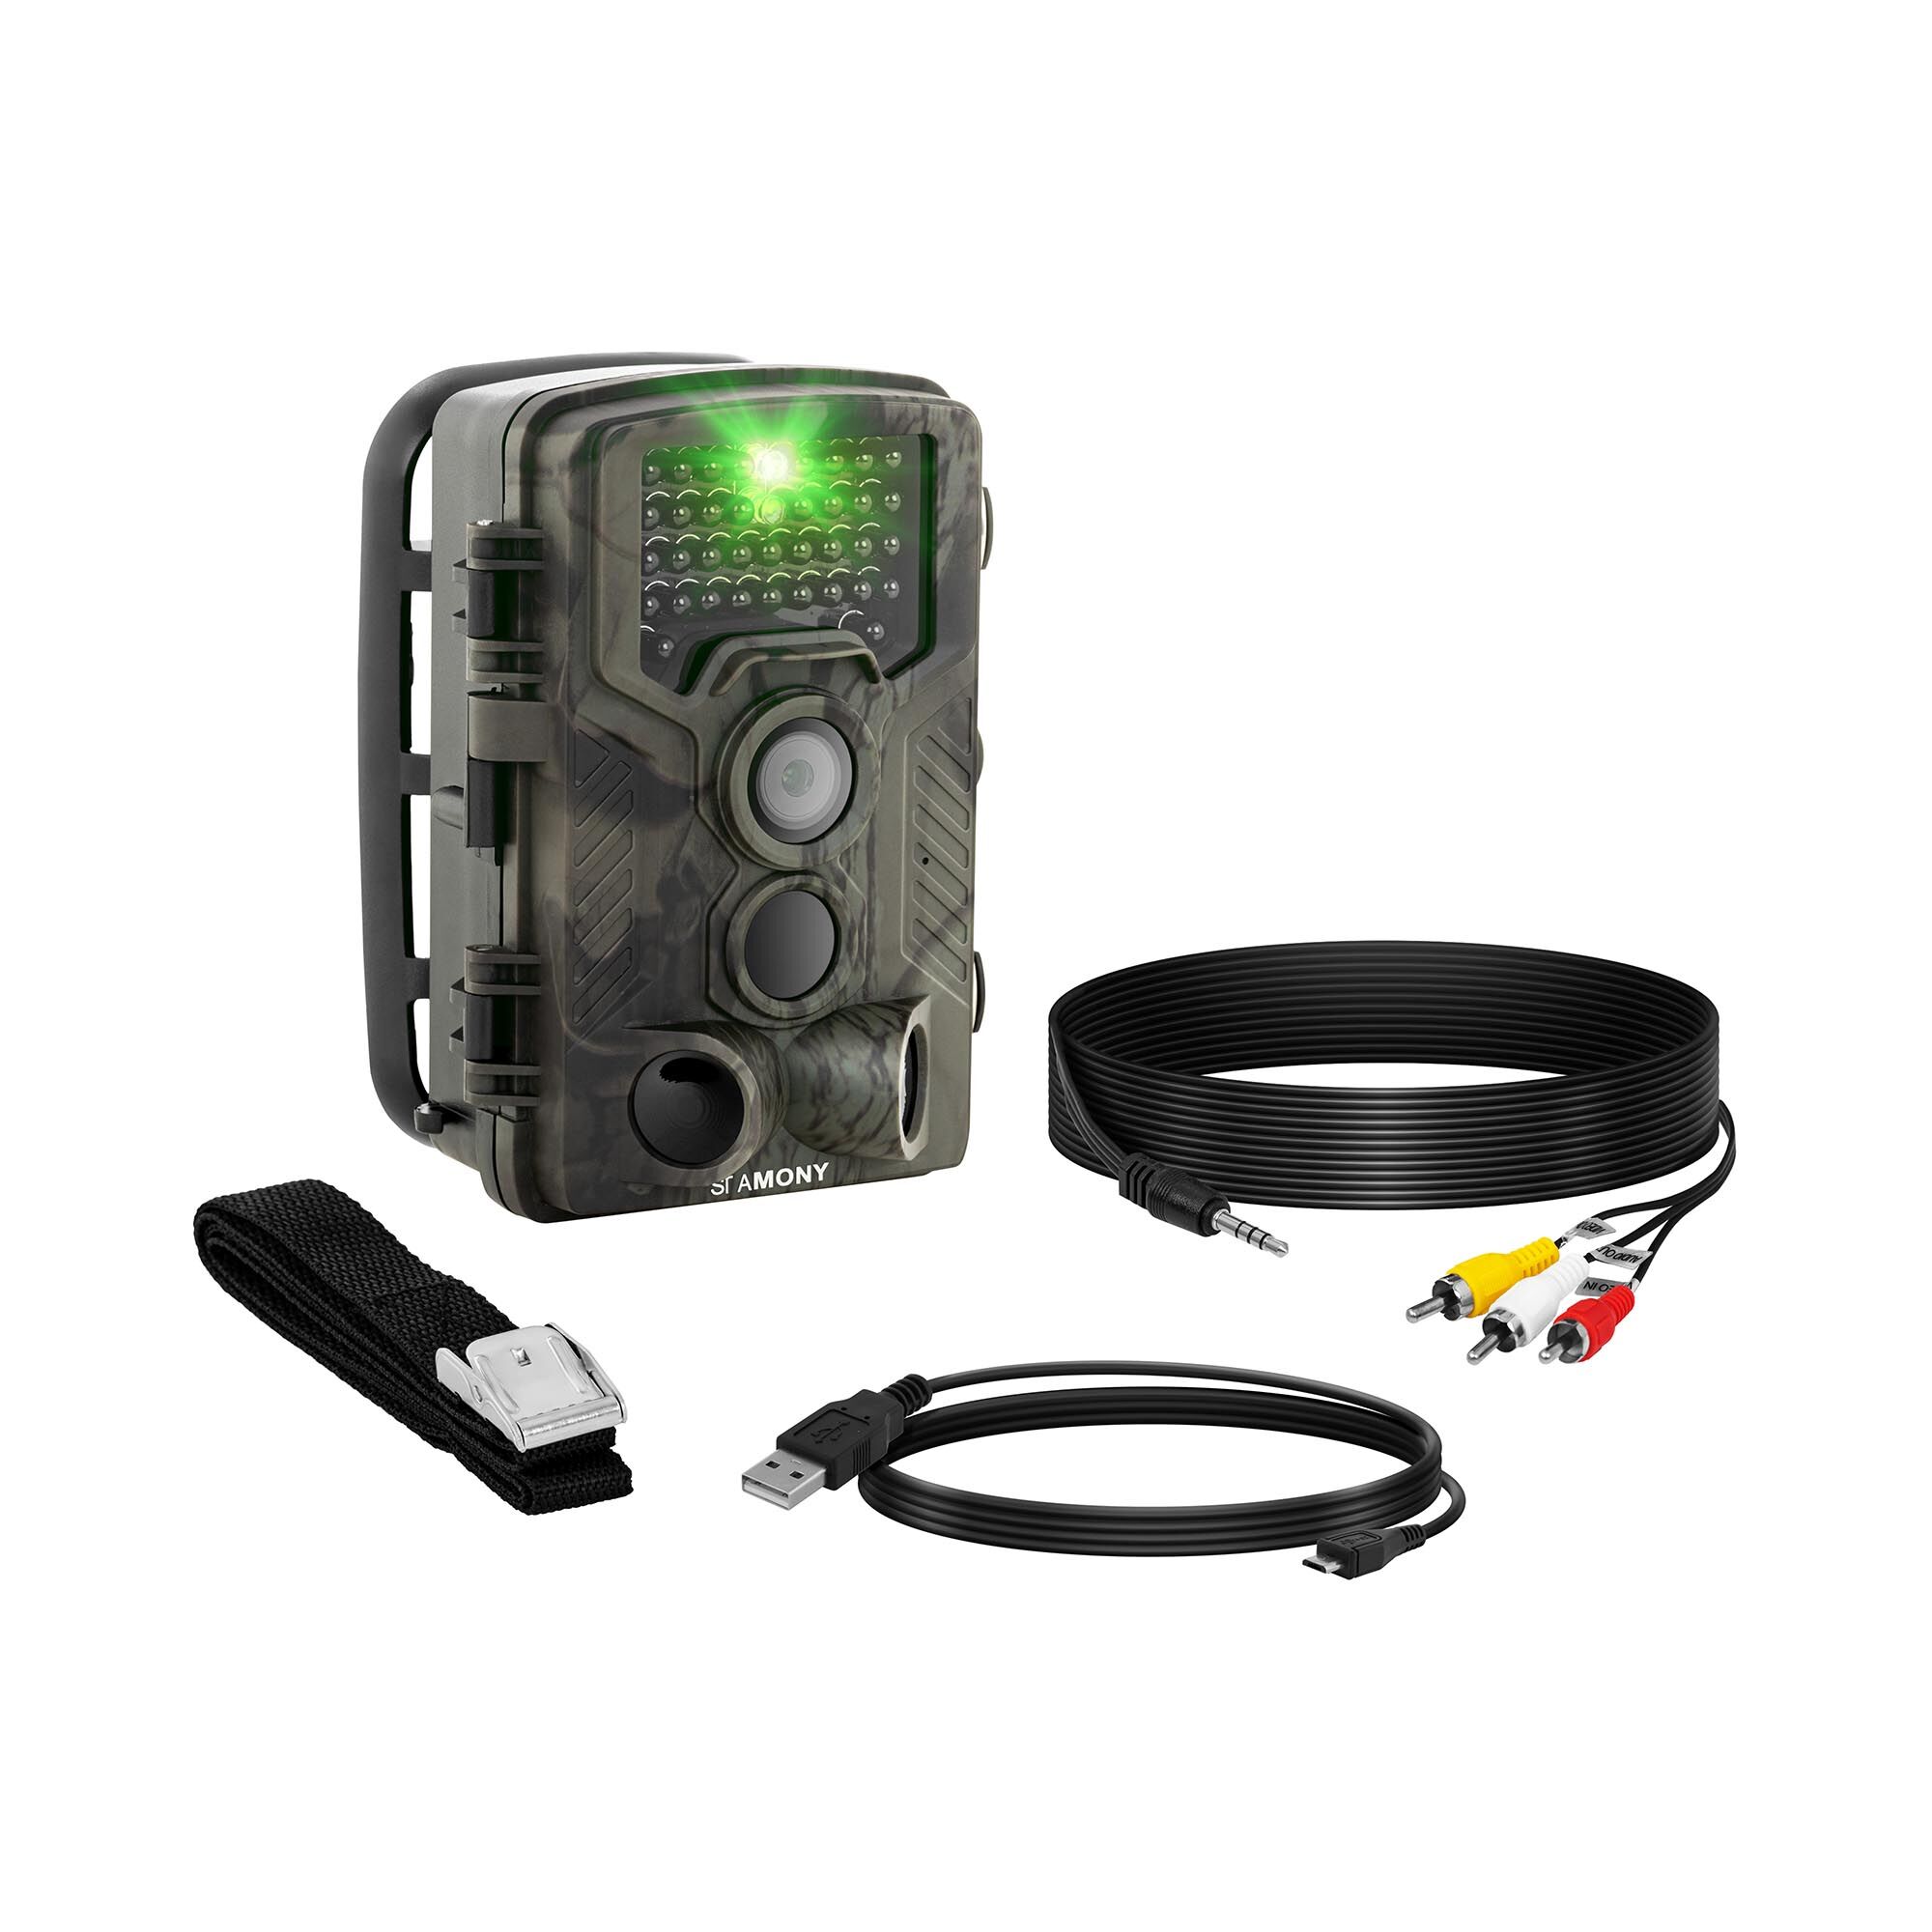 Notice d'utilisation, manuel d'utilisation et mode d'emploi Stamony Caméra de chasse - 8 Mpx - HD intégrale - 42 LED infrarouge - 20 m - 0,3 s ST-HC-8000B   